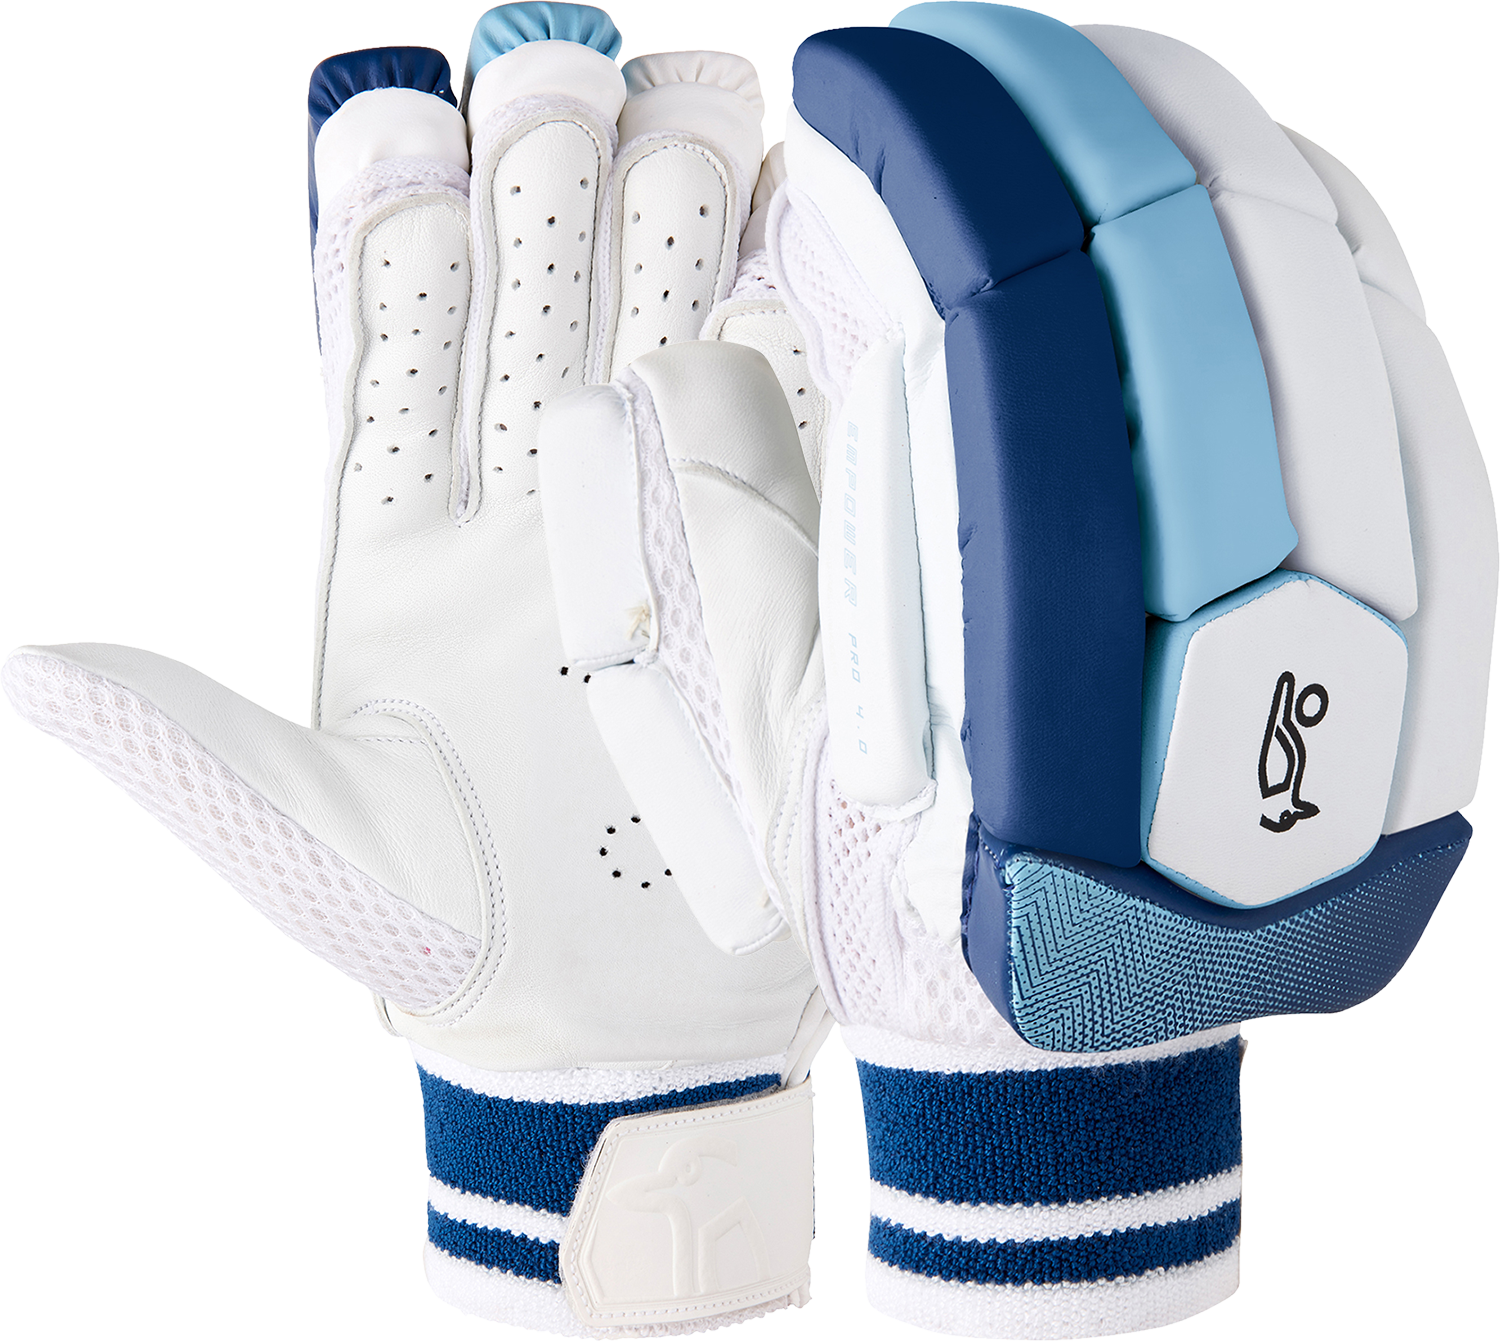 Kookaburra Empower Pro 4.0 Batting Gloves 3A32374